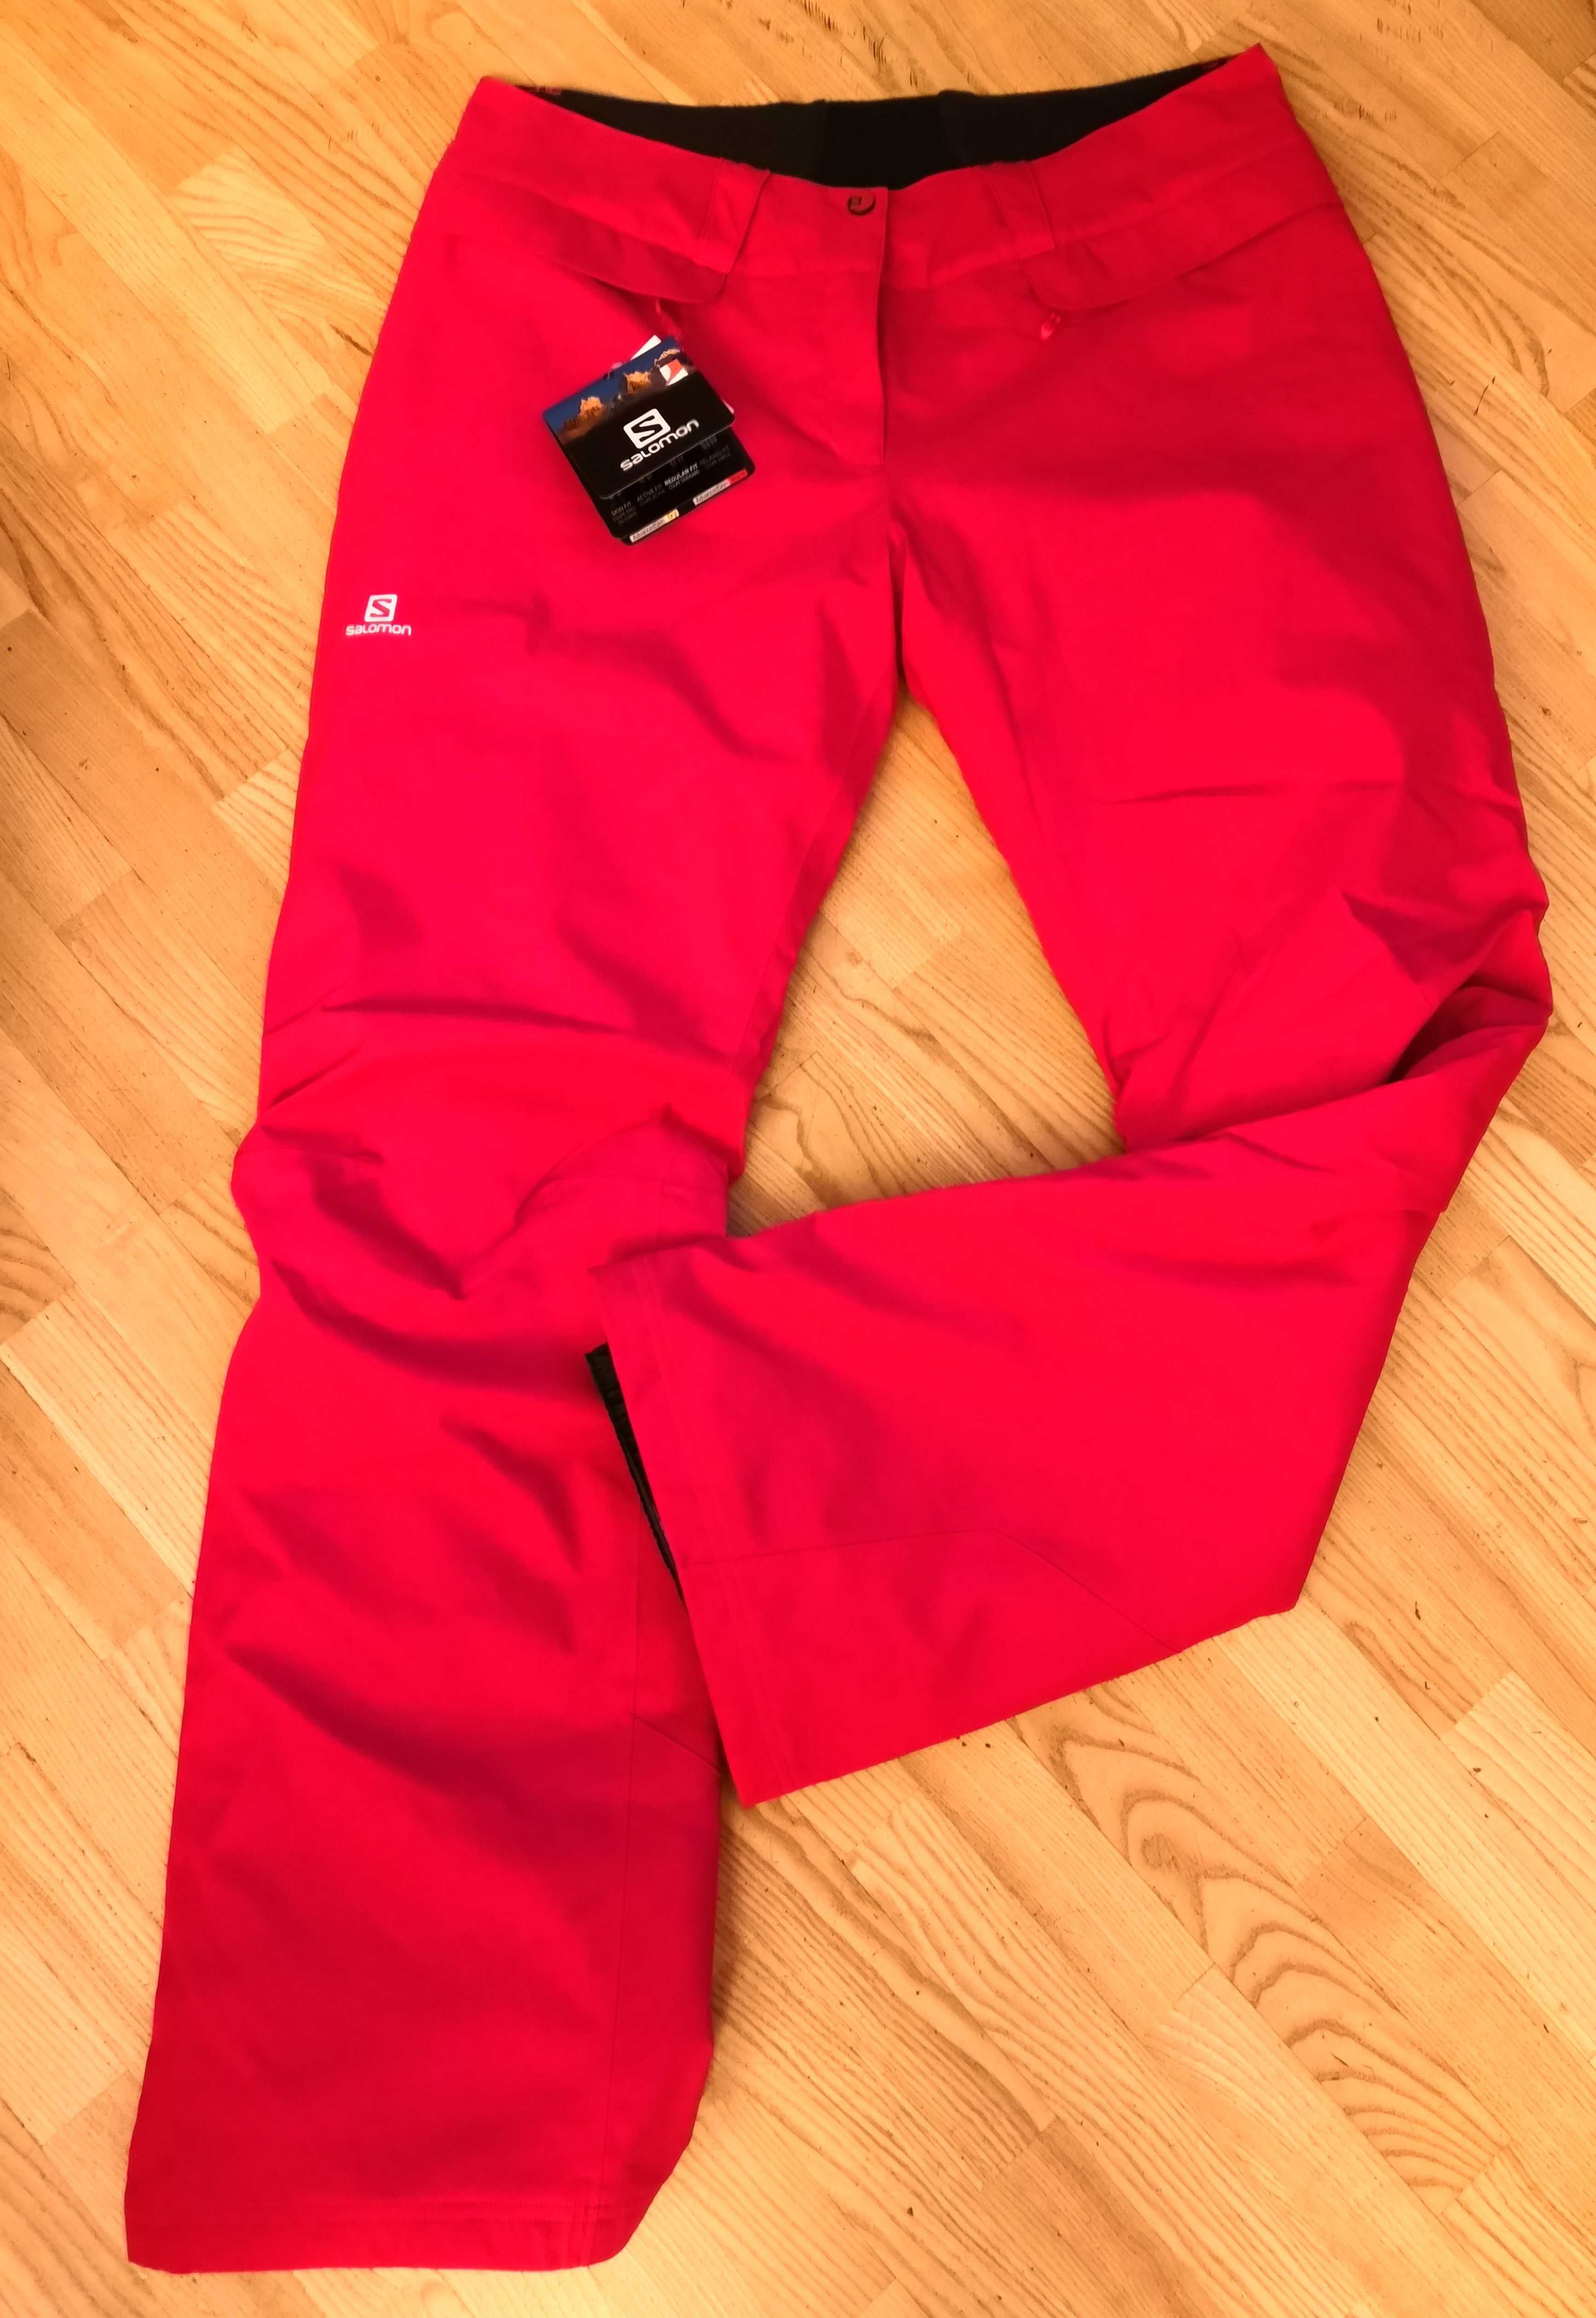 Spodnie narciarskie SALOMON, damskie XL, NOWE